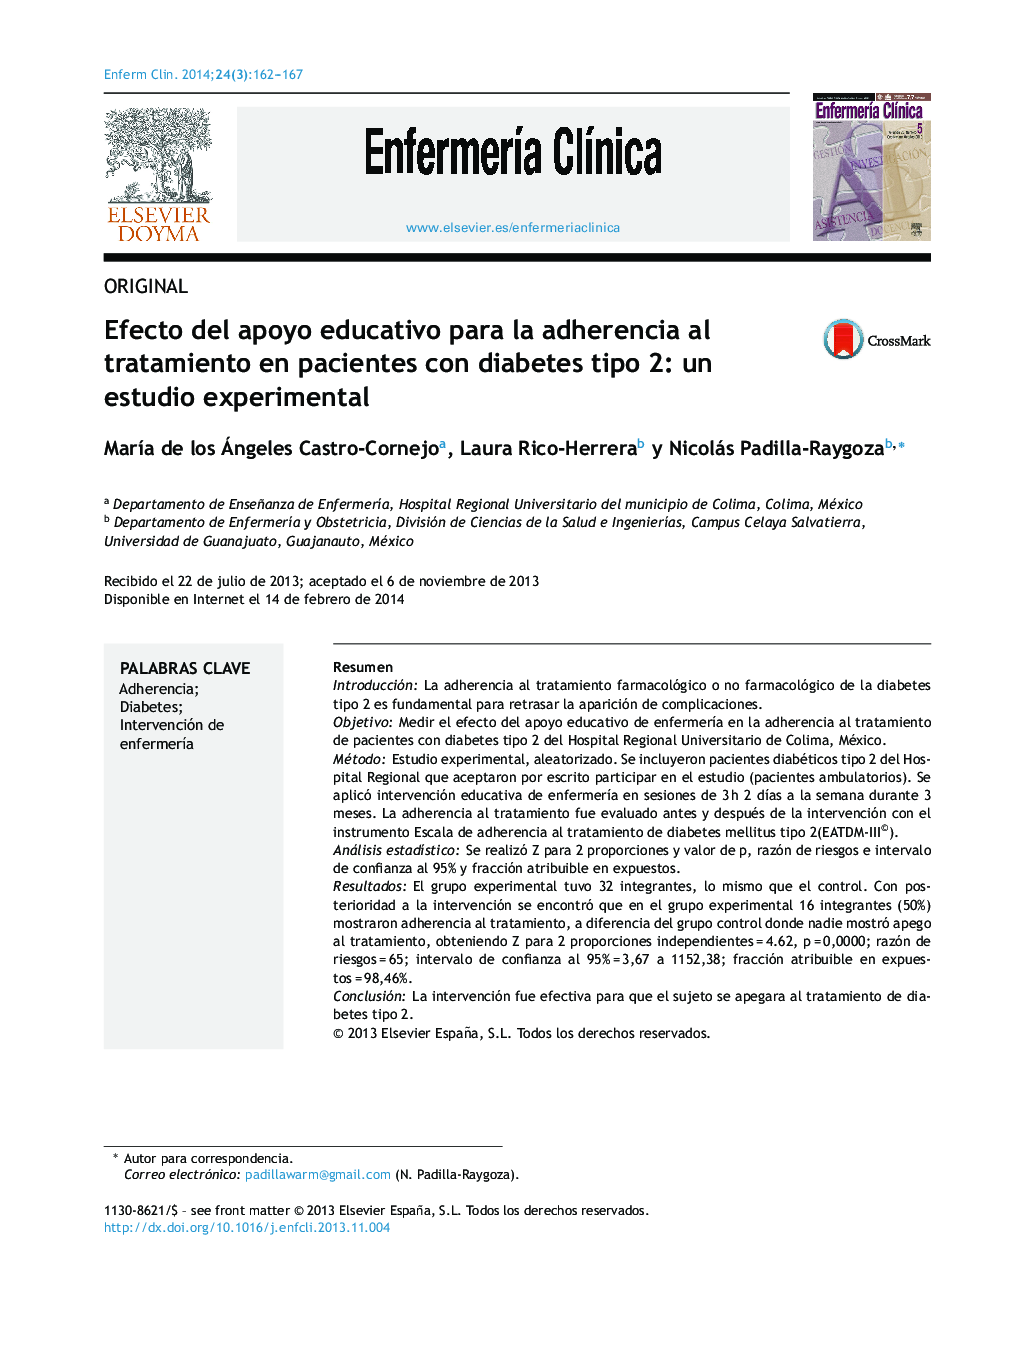 تأثیر حمایت آموزشی برای پیروی از درمان در بیماران مبتلا به دیابت نوع 2: یک مطالعه تجربی 